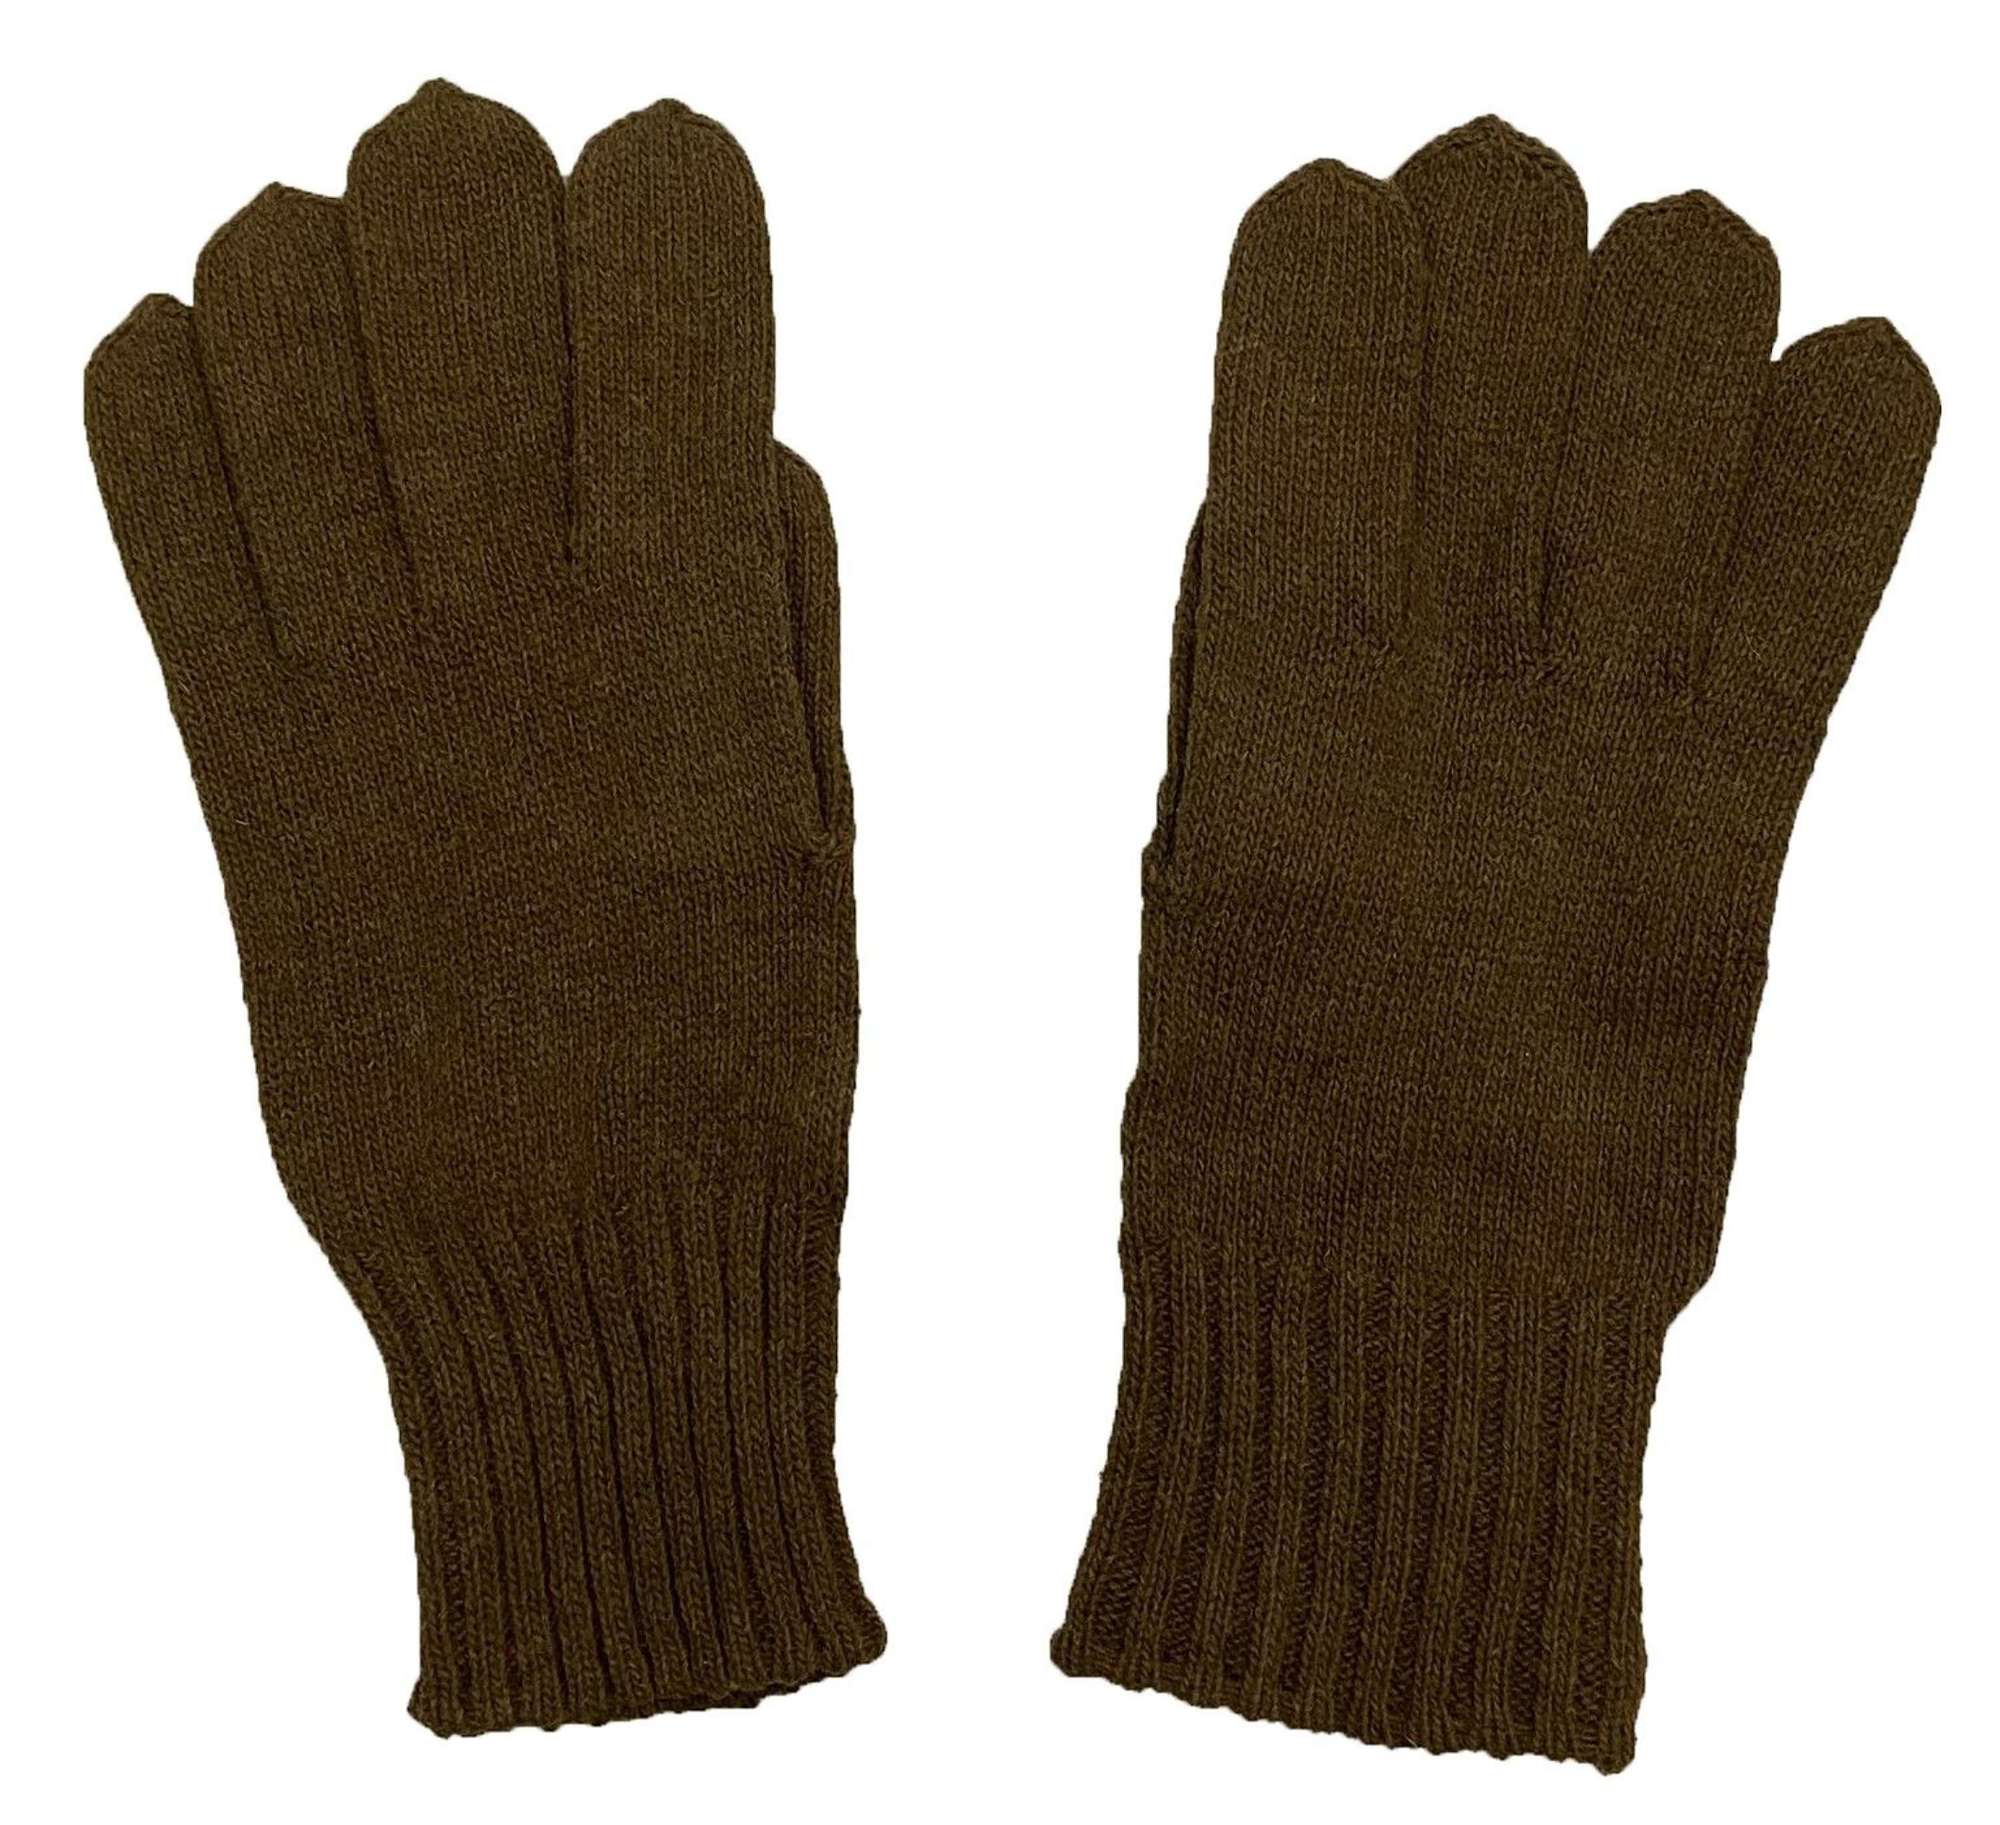 Original WW2 Period British Army Woollen Gloves